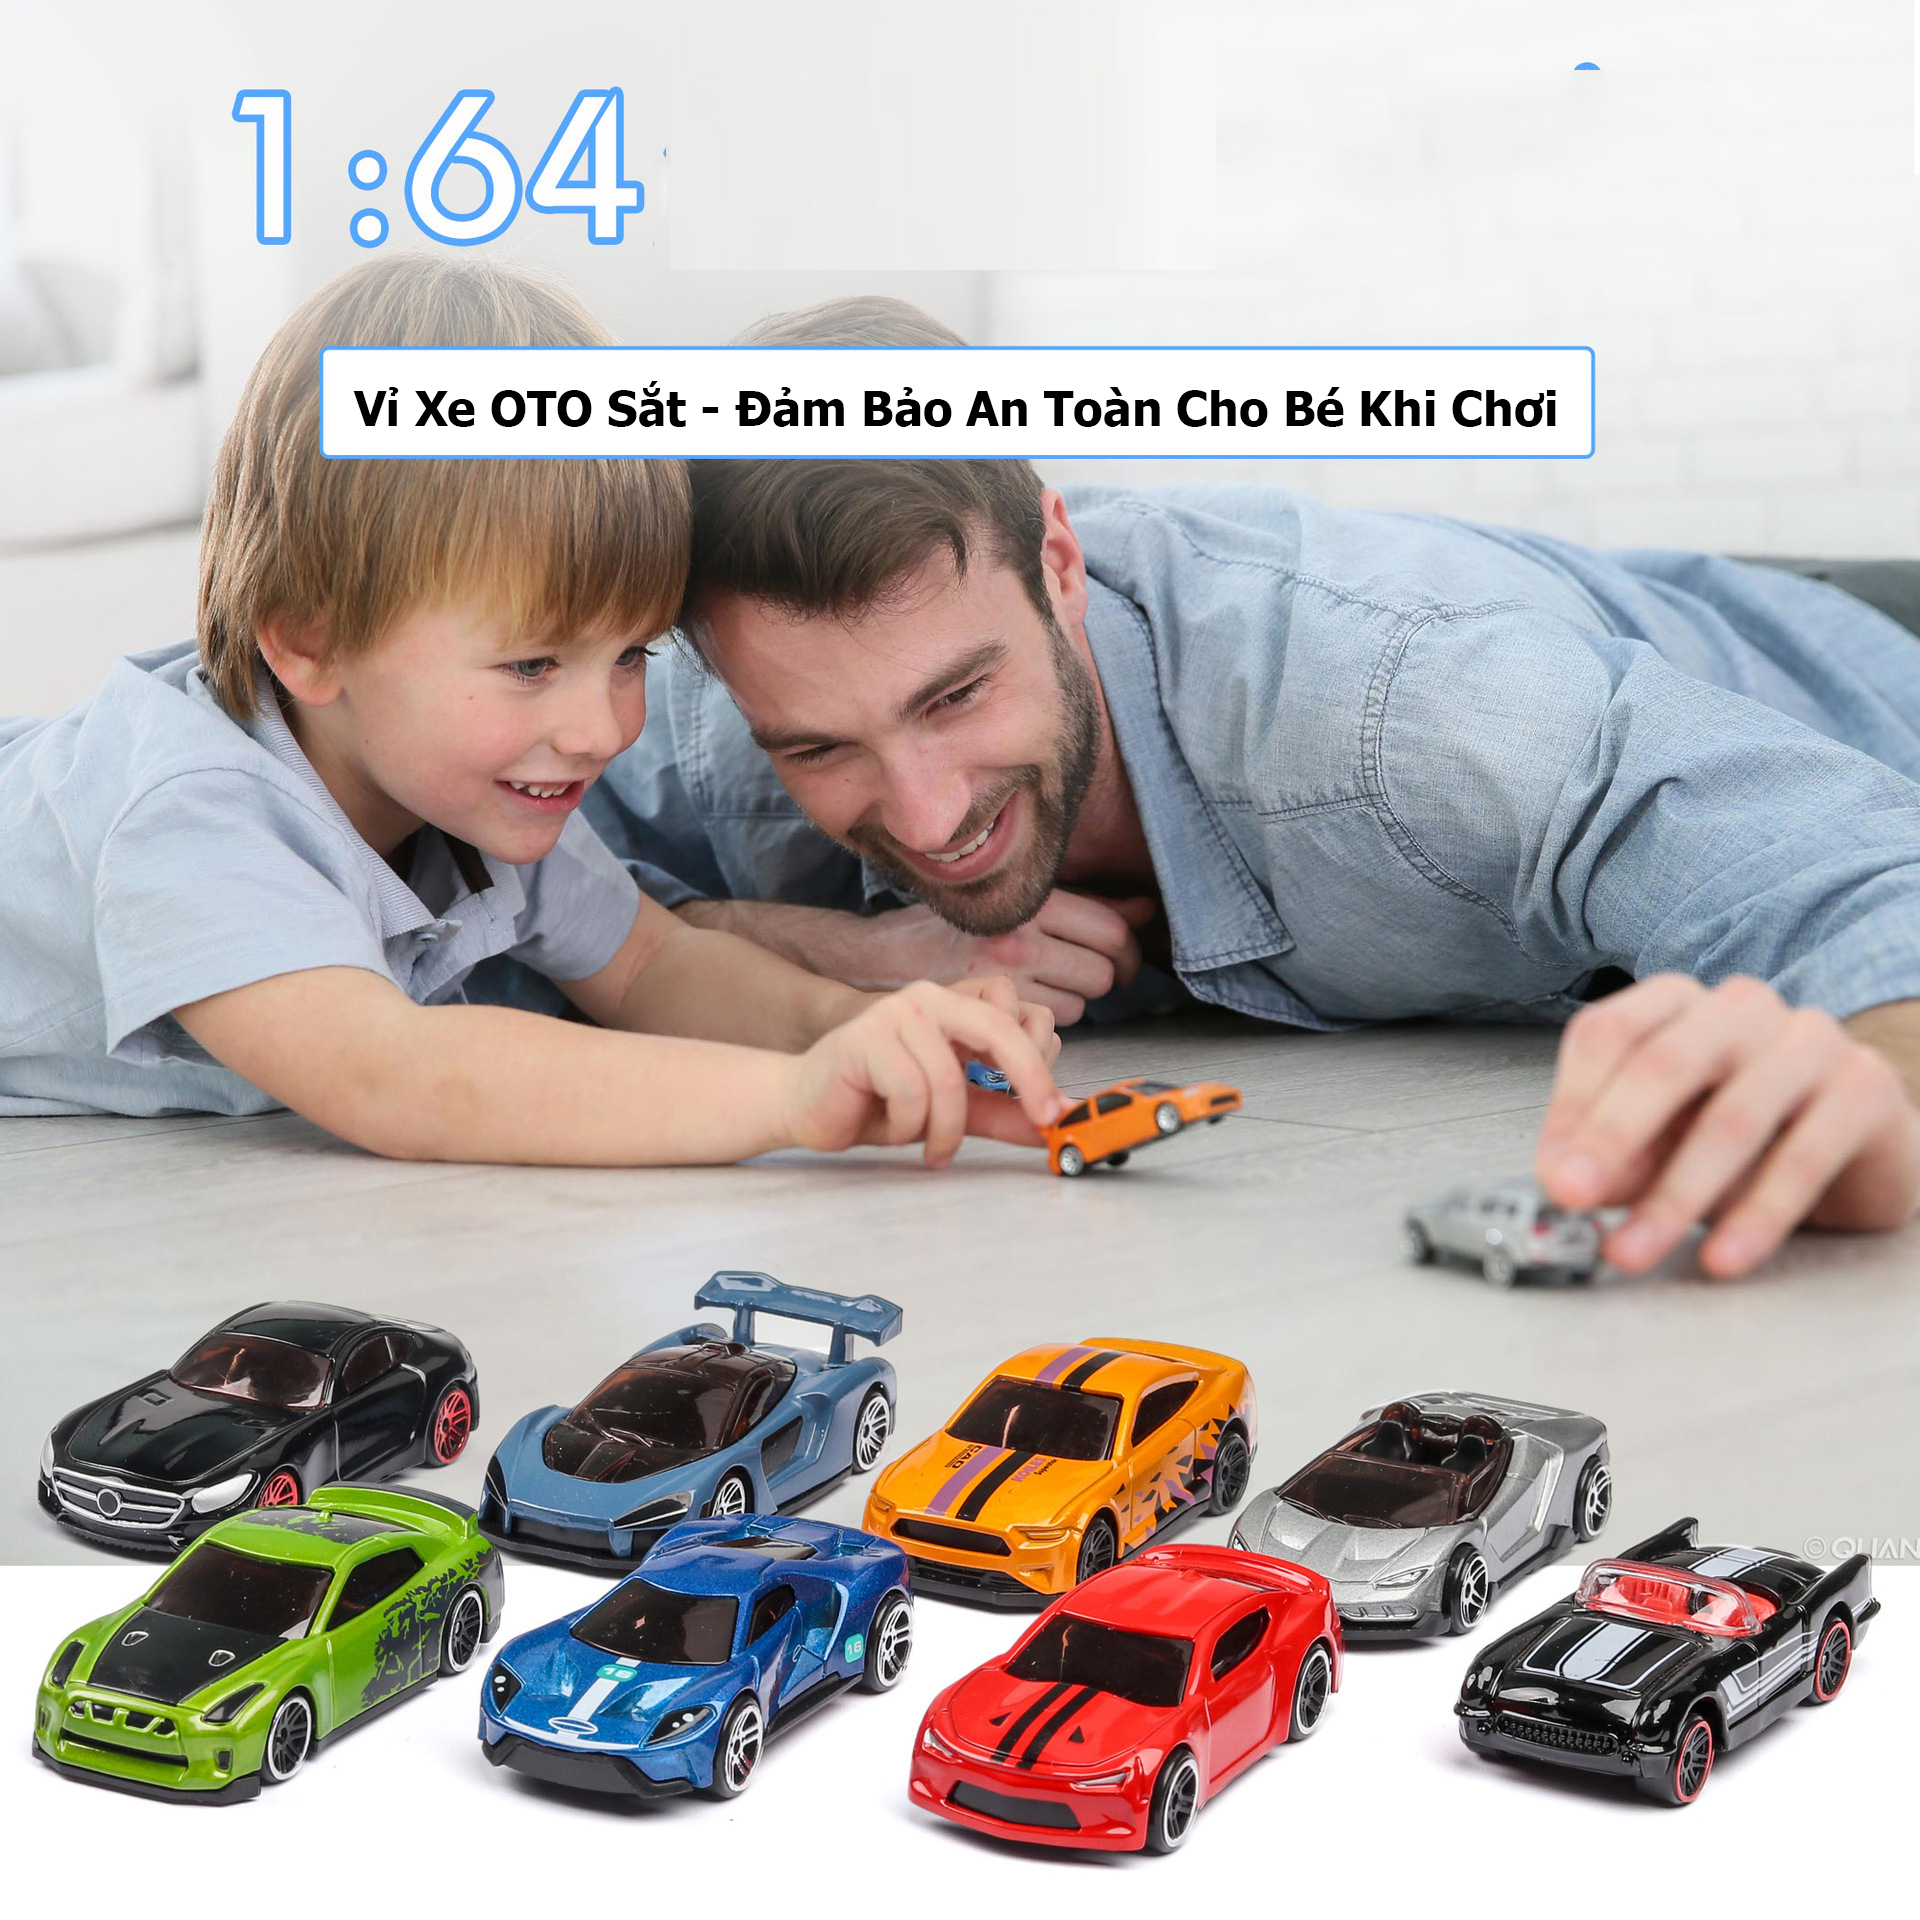 Tổng hợp 89 hình về đồ chơi mô hình xe  NEC